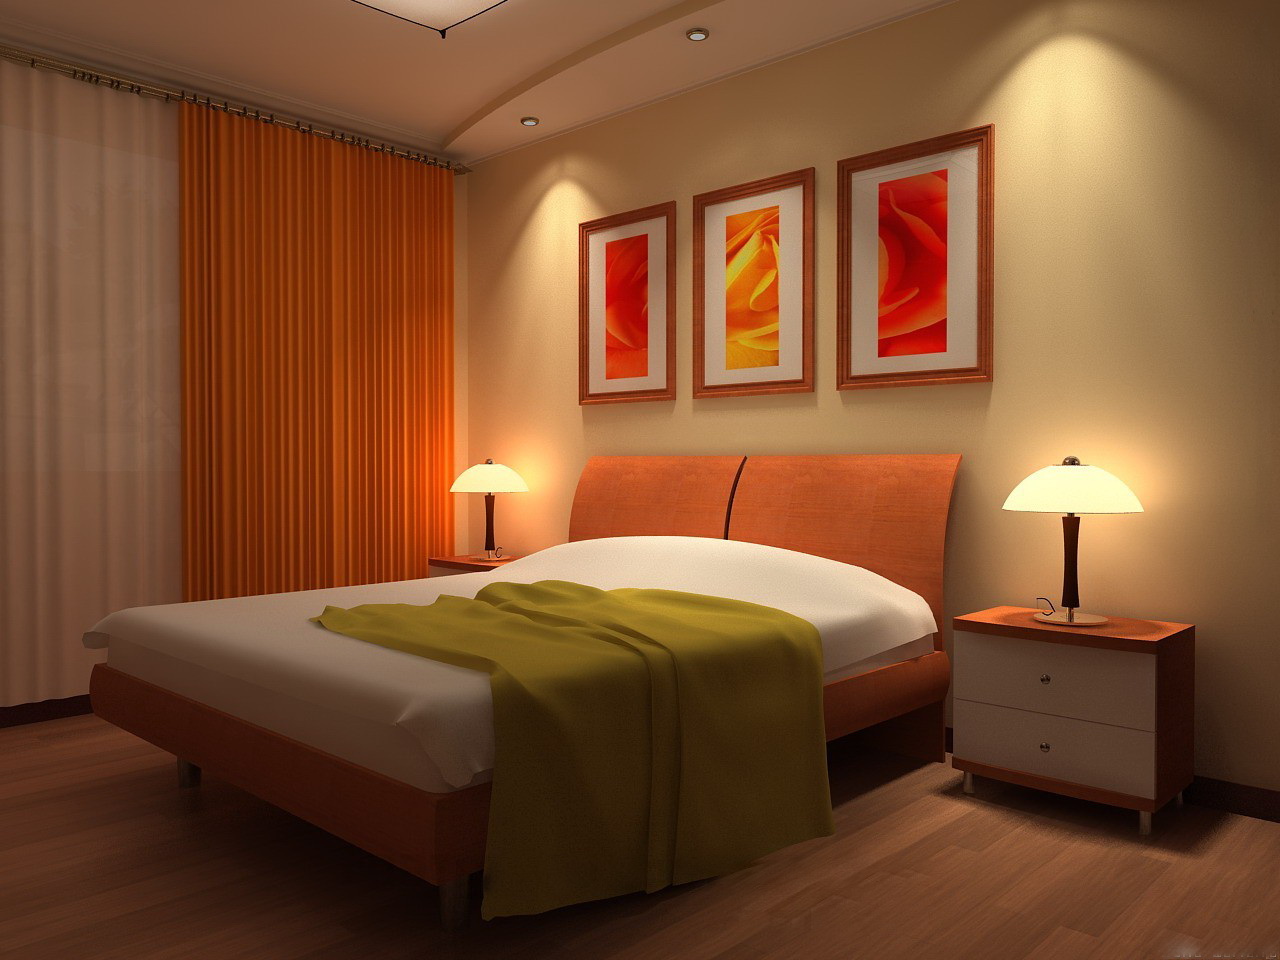 Фото на тему: Какие выбрать цвета для интерьера спальни?